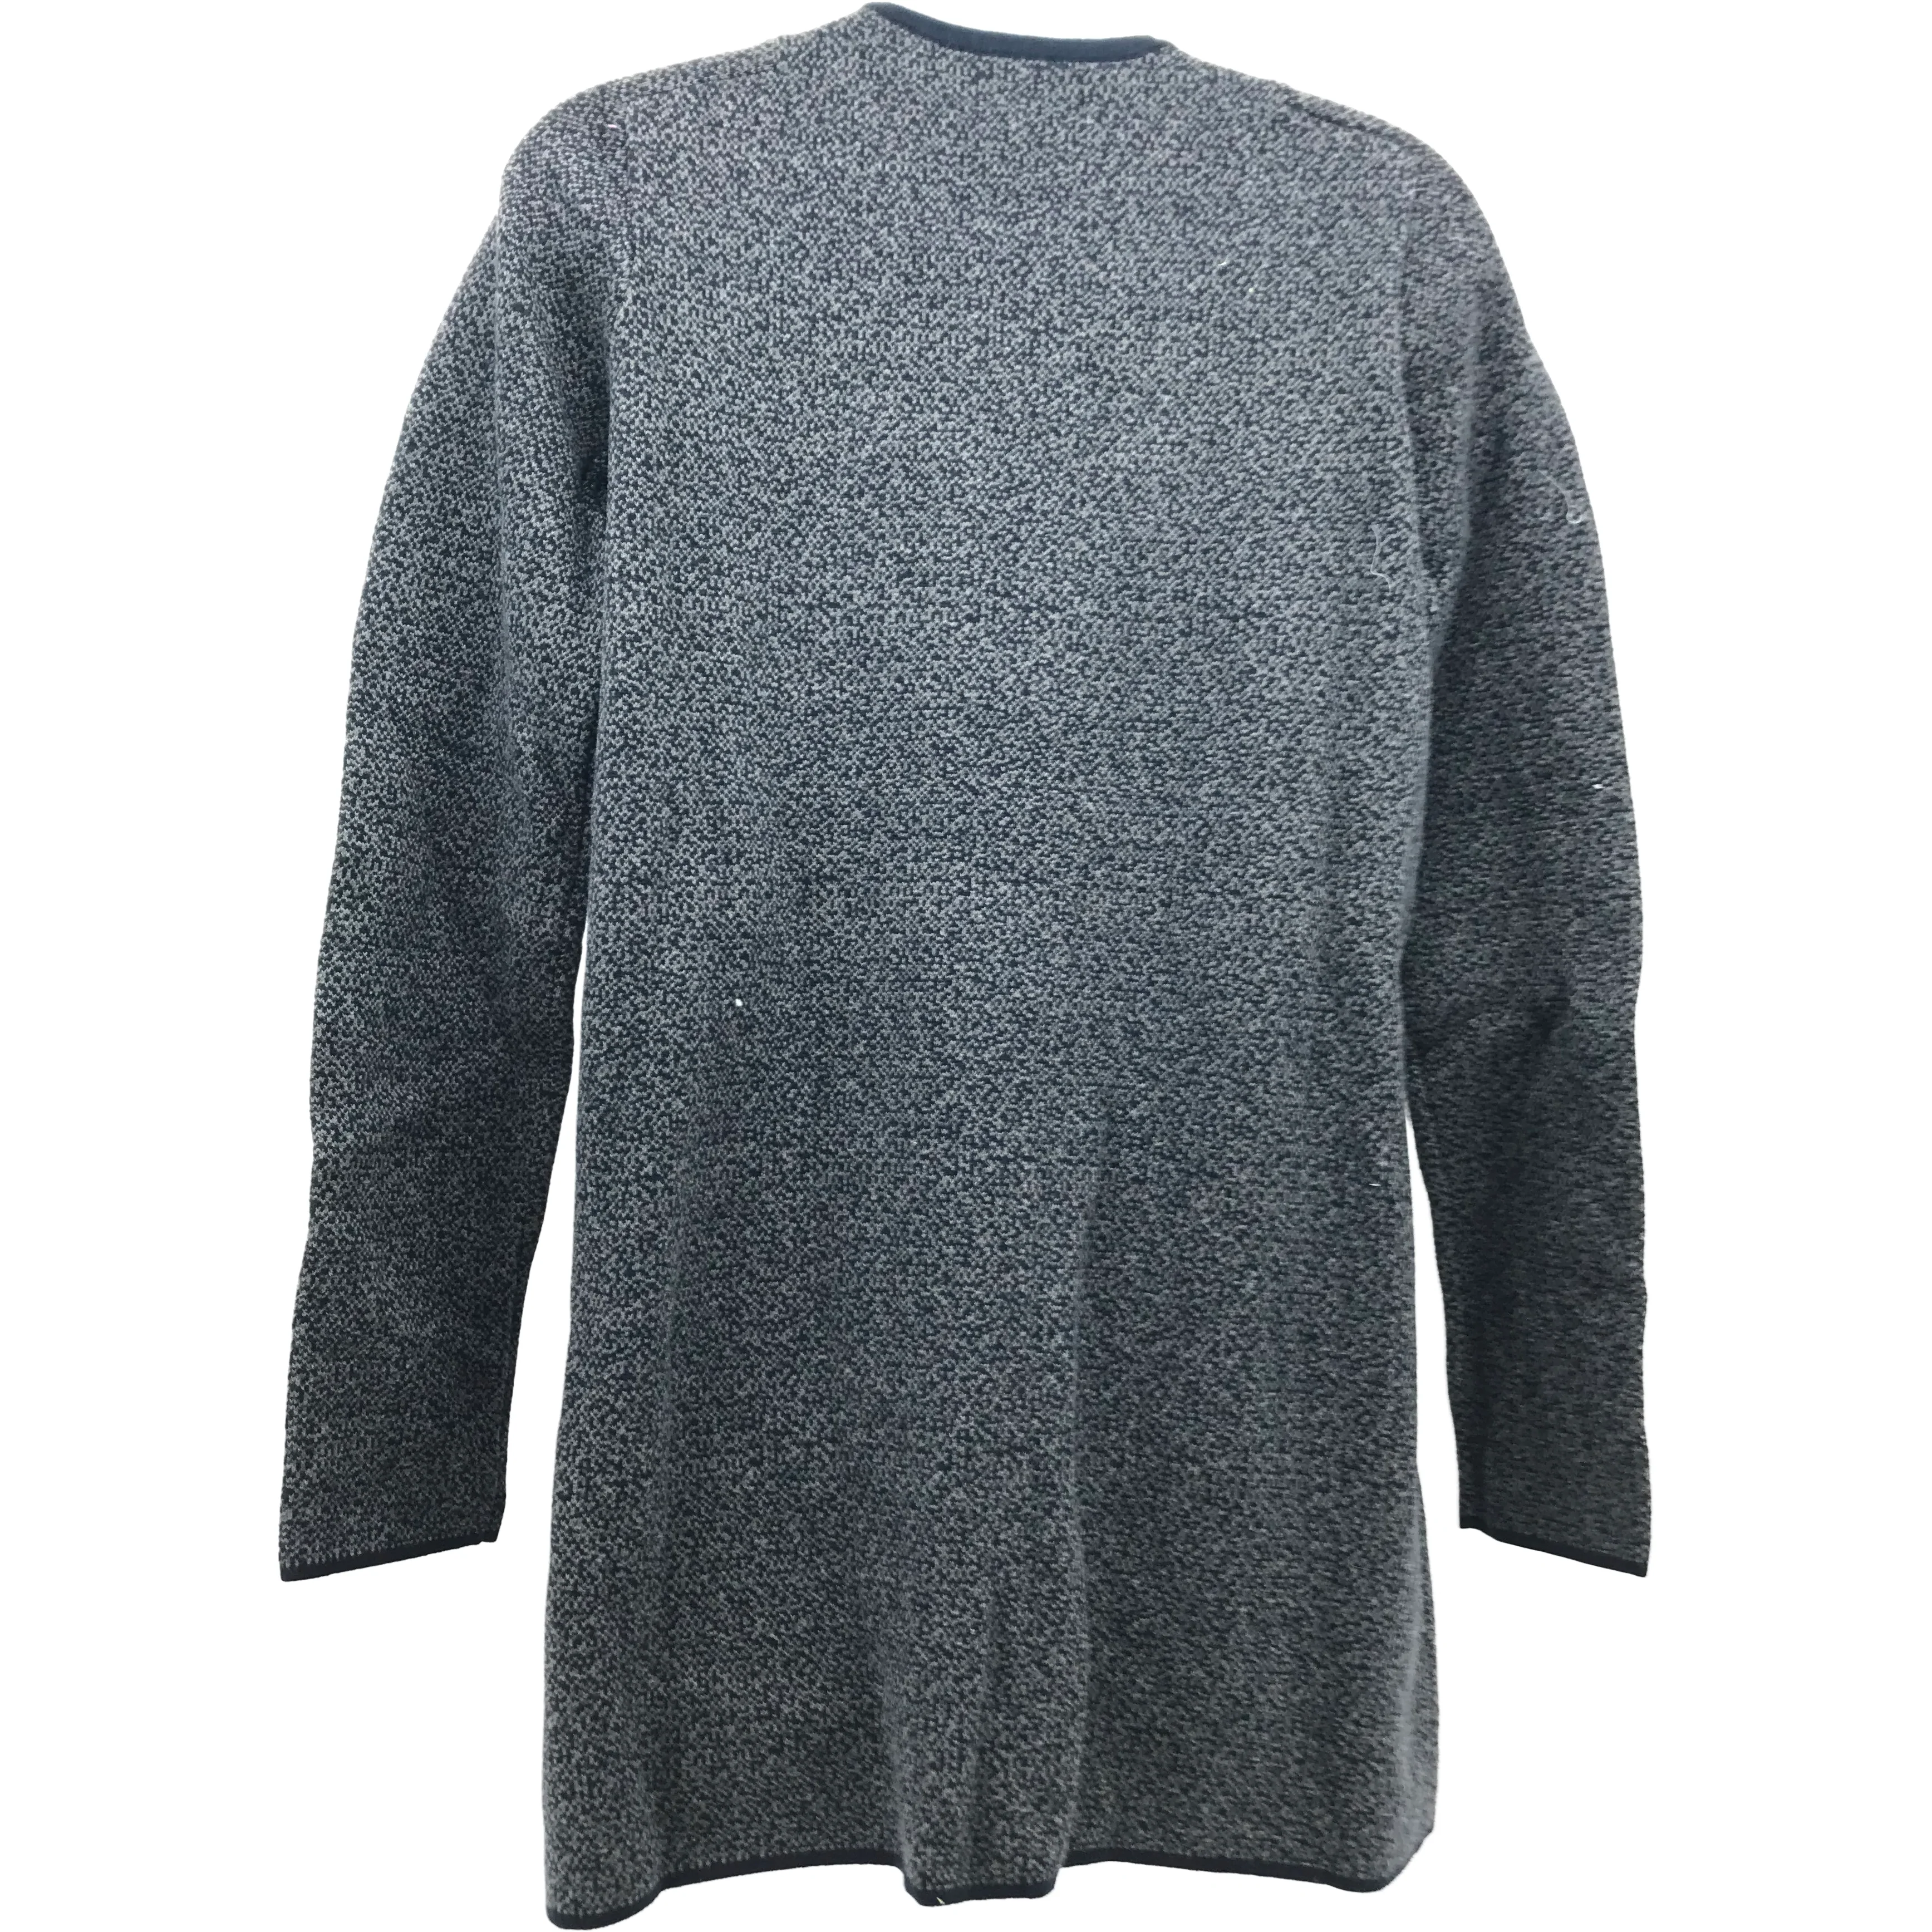 Nicole Miller Women's Zip Up Sweater / Grey & Blue / Various Sizes